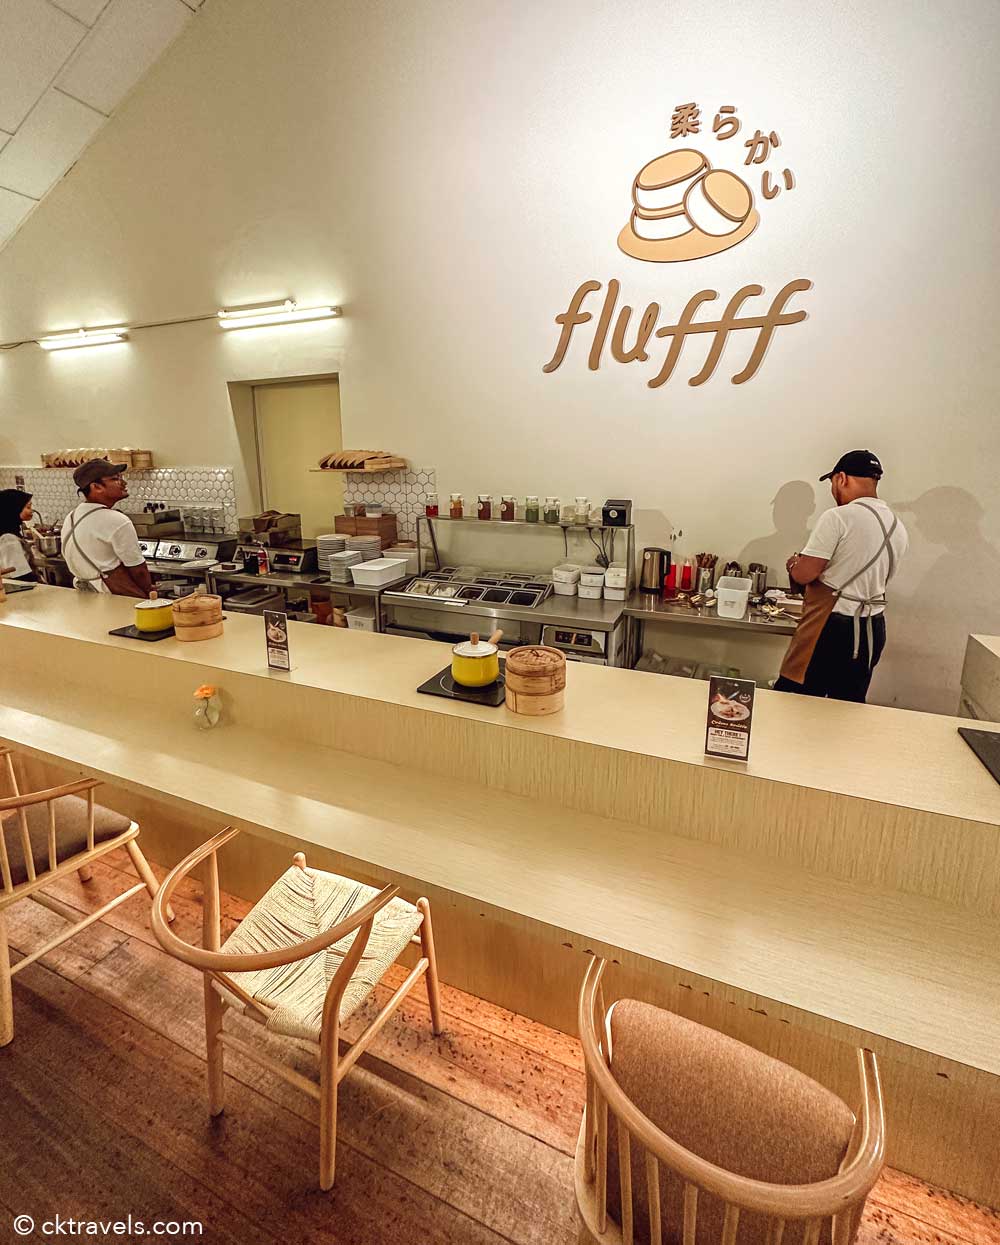 Flufff Pancake Cafe in Ipoh